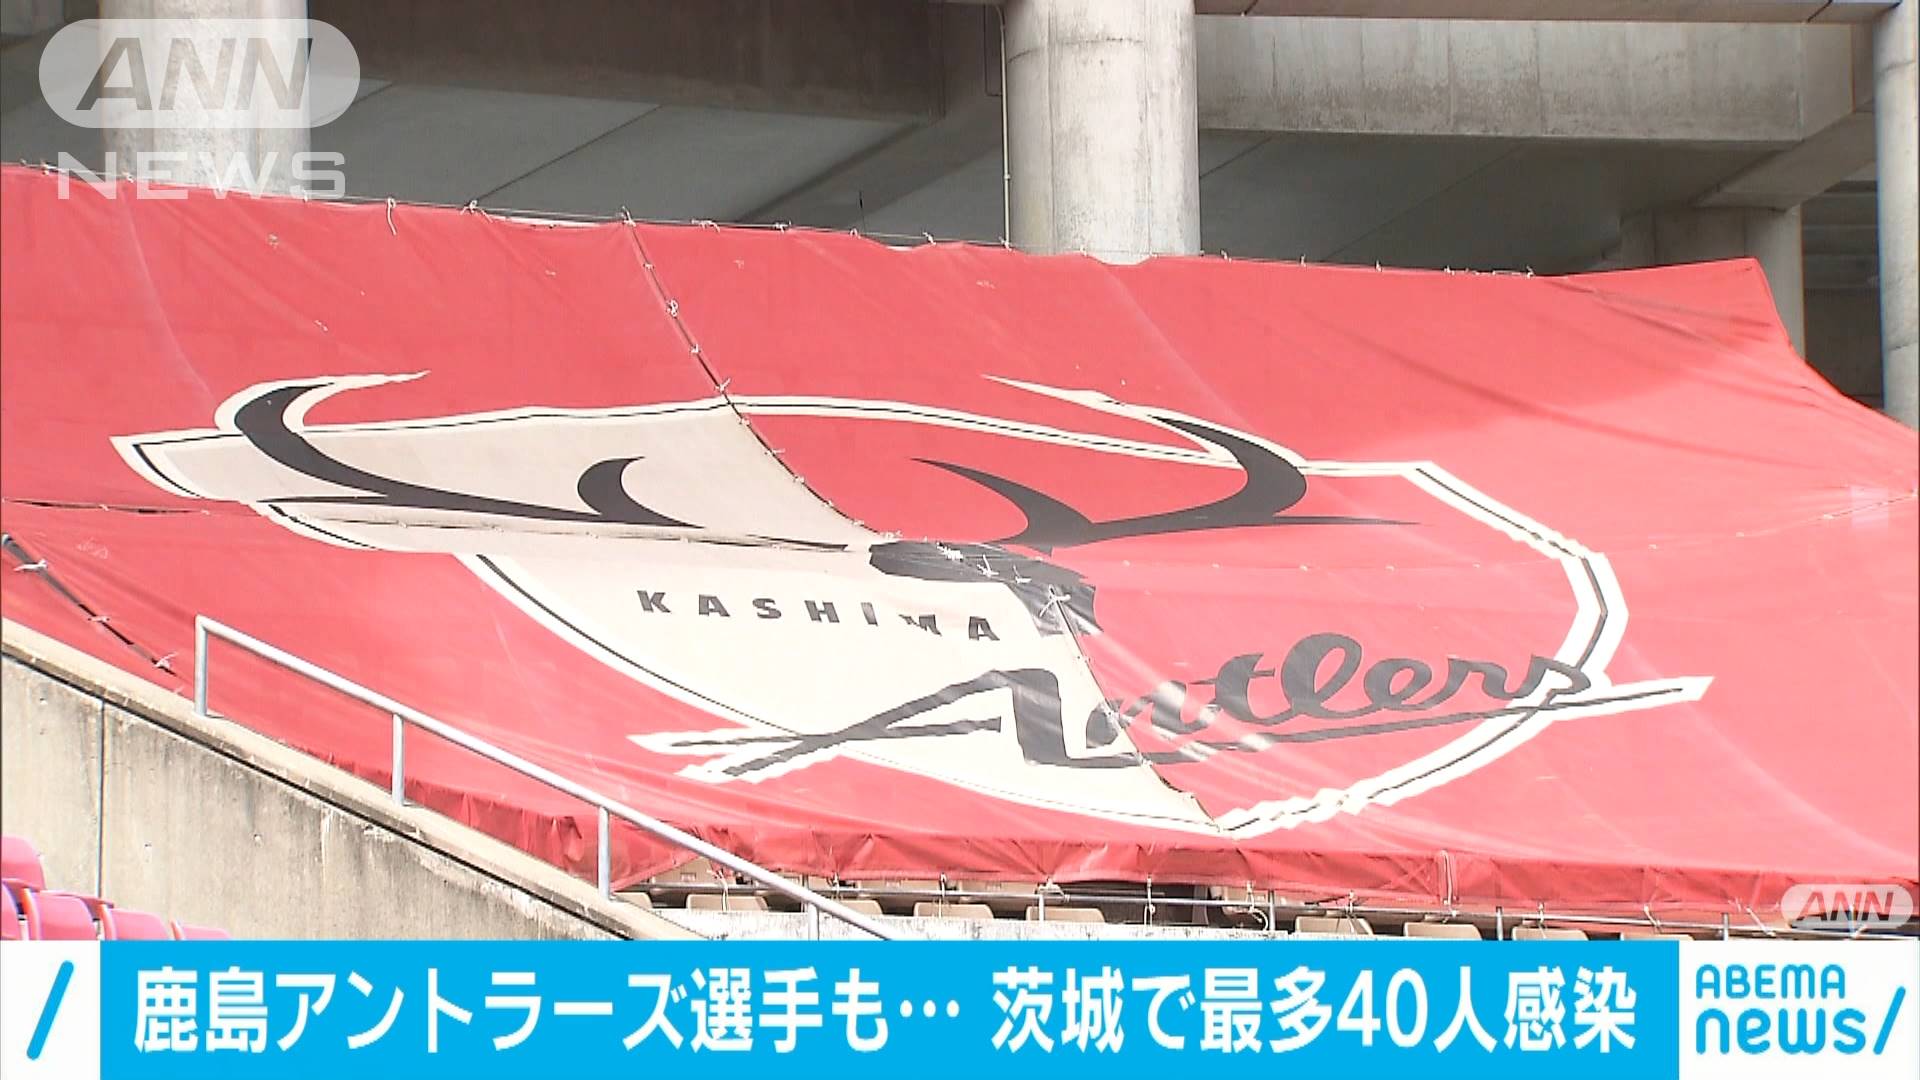 鹿島アントラーズ選手も 茨城で最多40人感染 テレ朝news テレビ朝日のニュースサイト